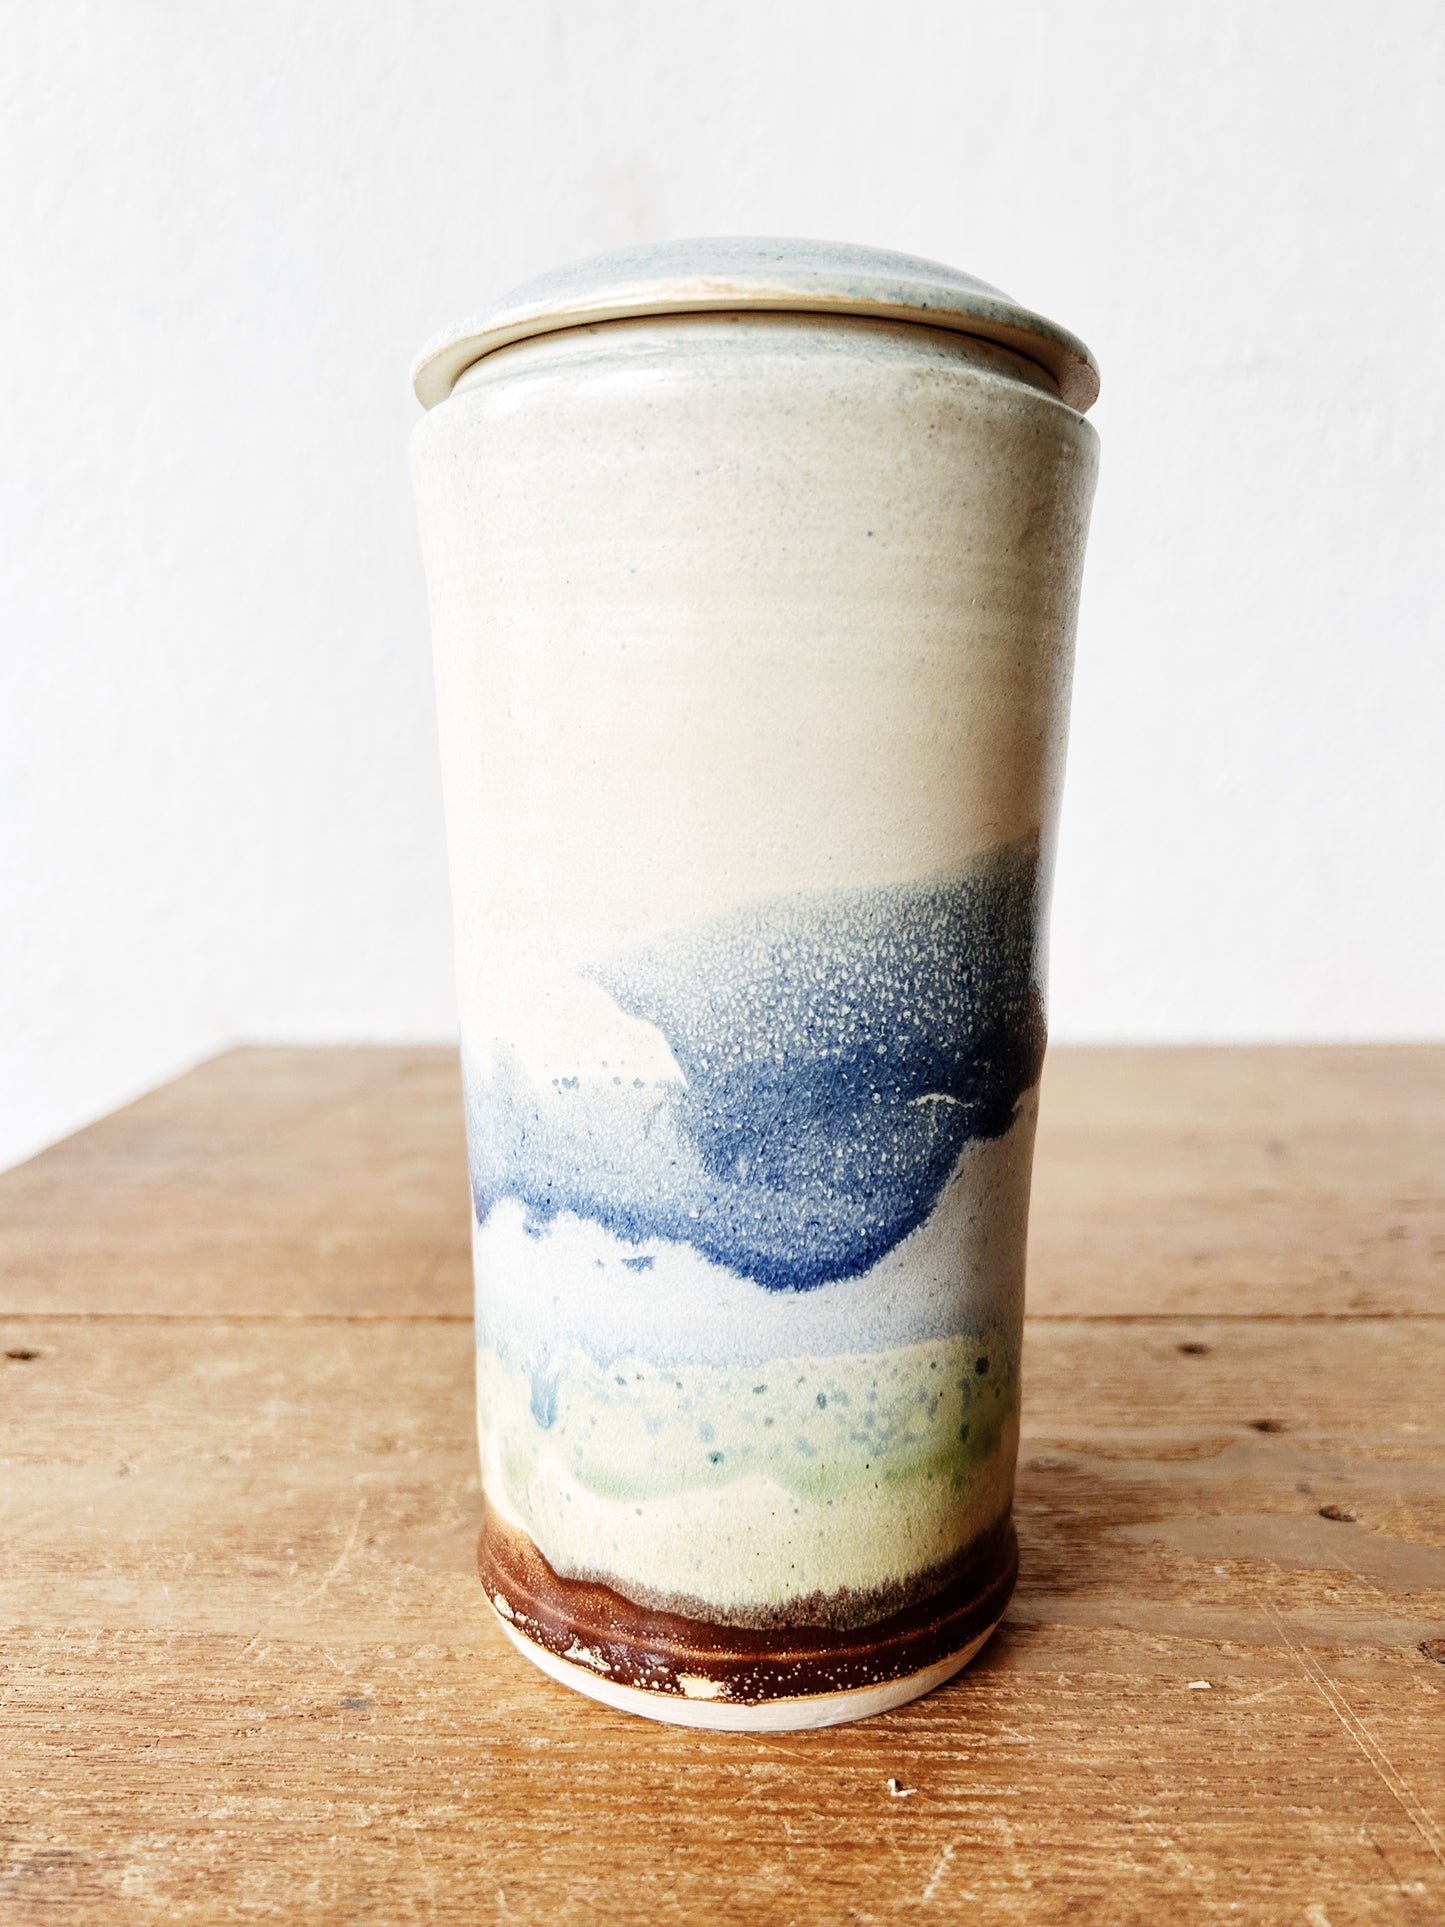 Lidded Handmade Ceramic Vessel